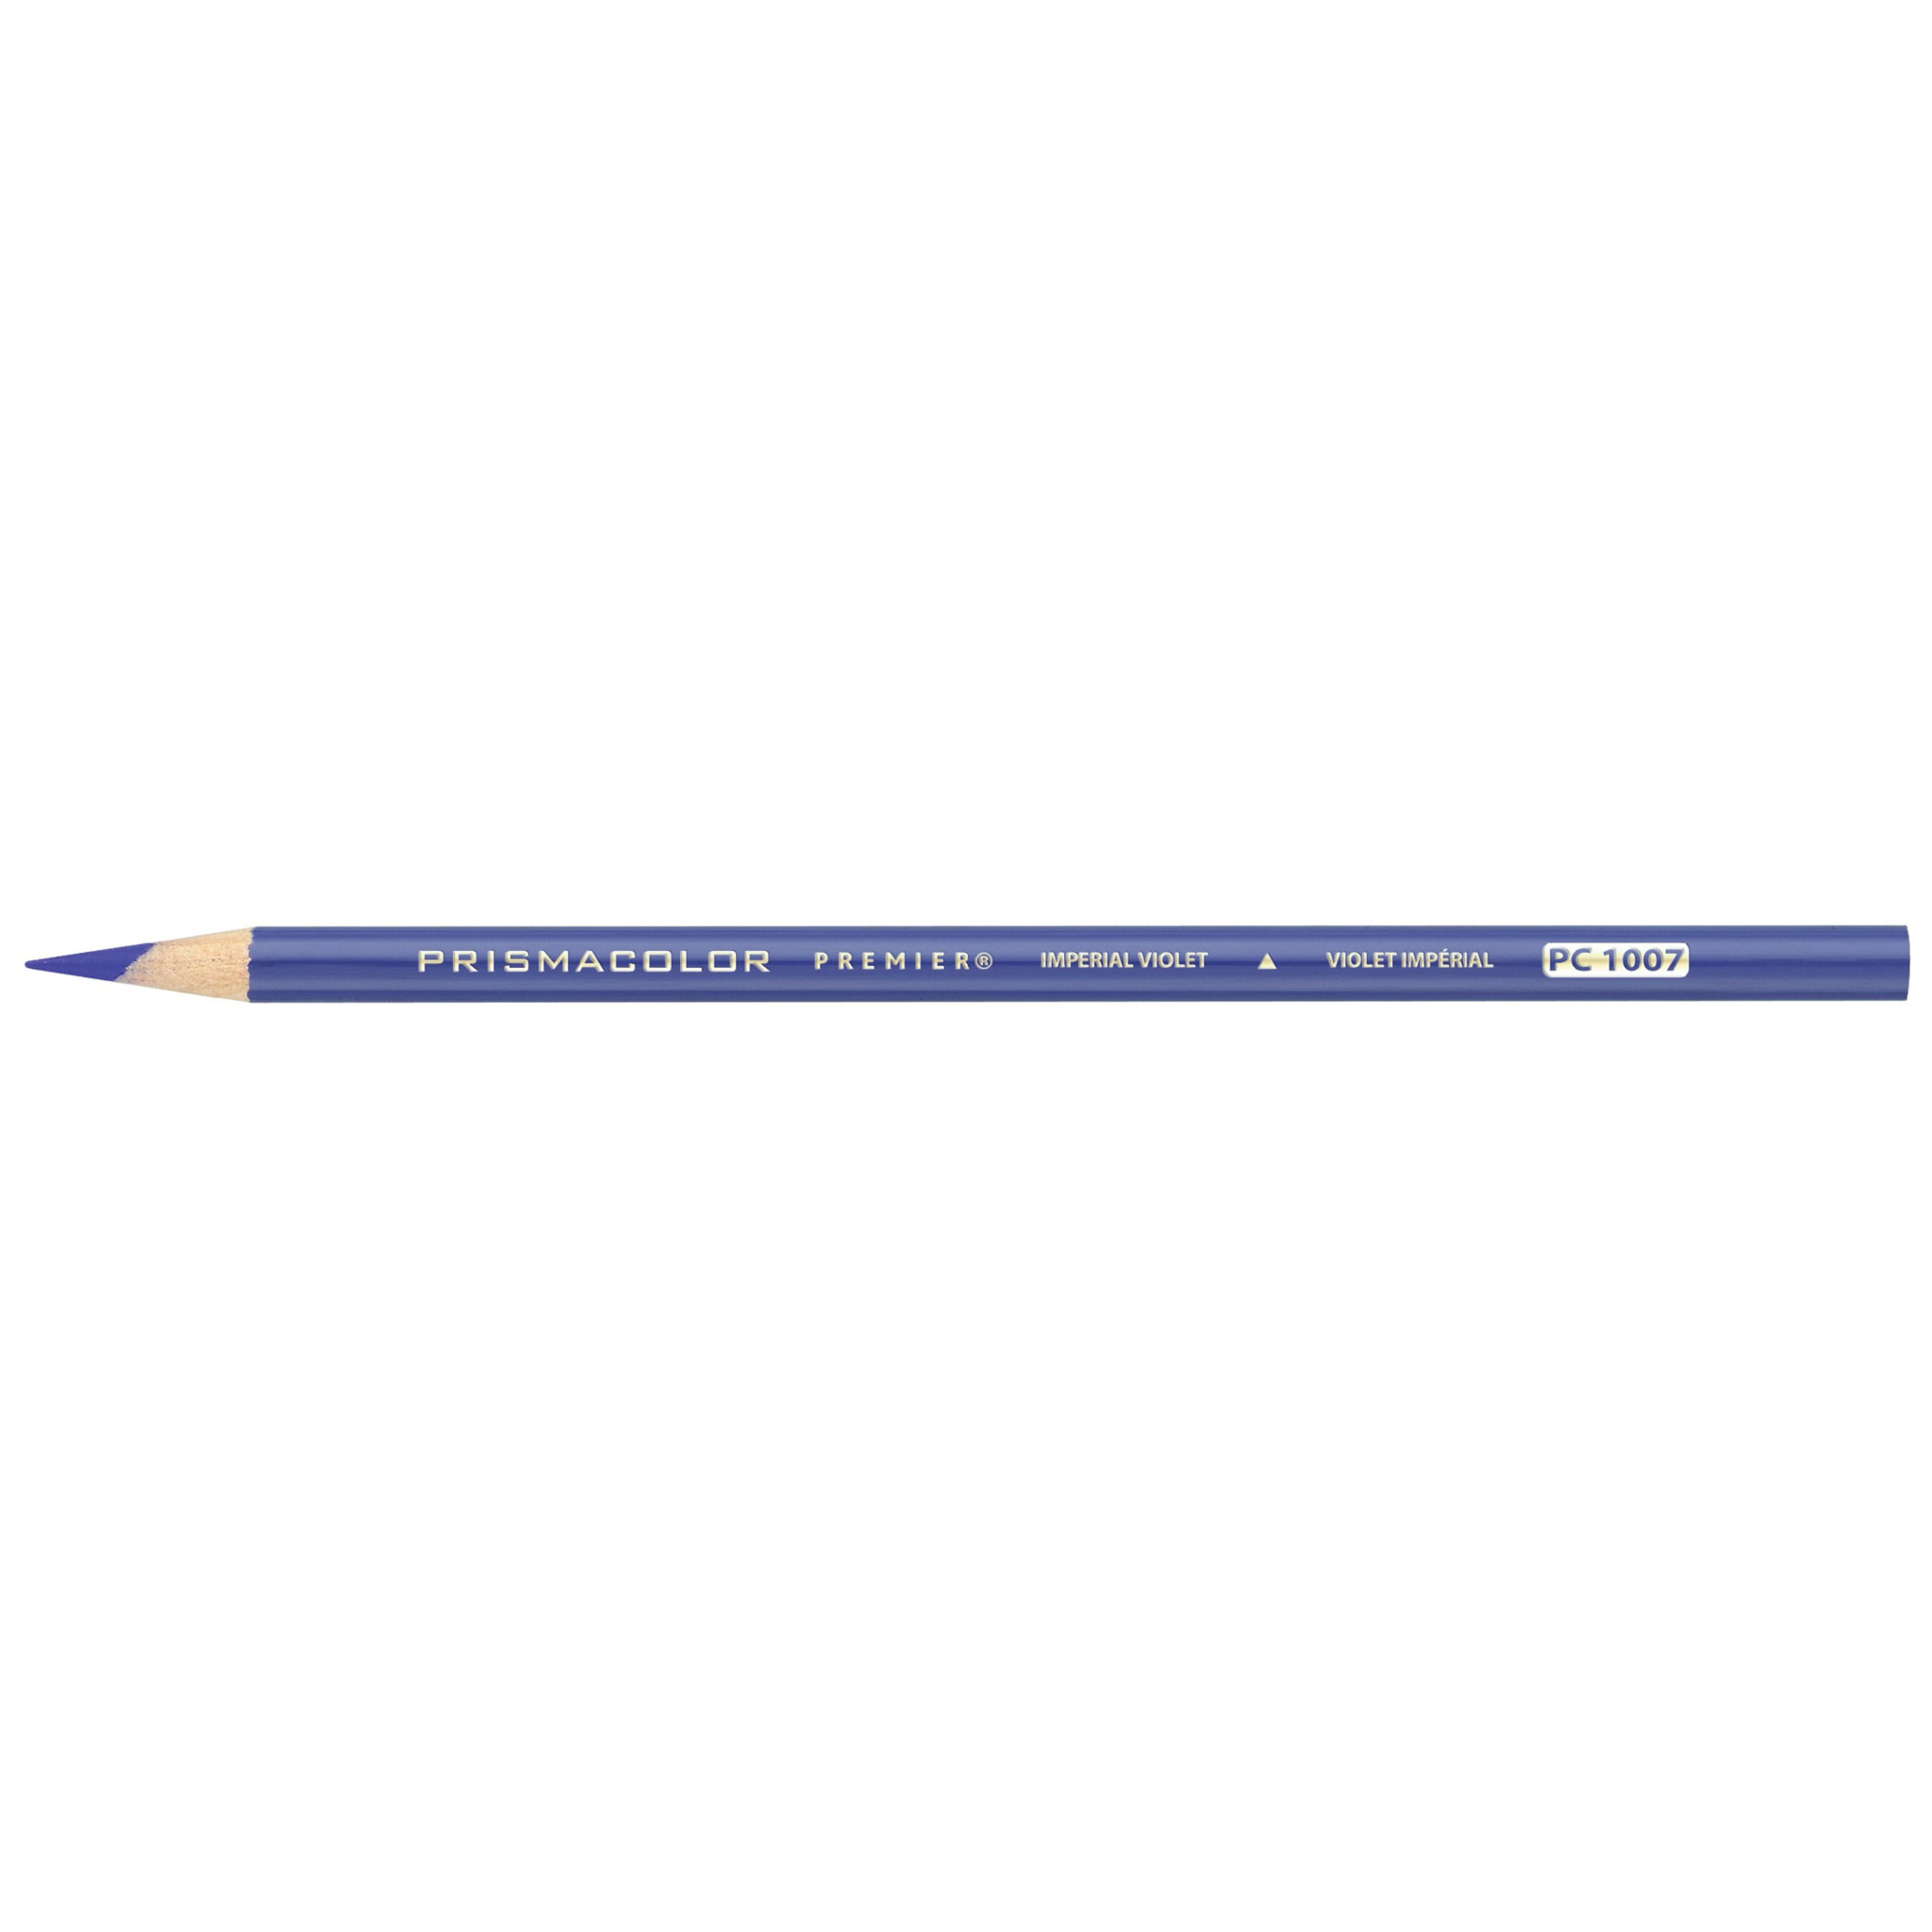 Prismacolor Premier Soft Core Colored Pencil, Violet PC 932